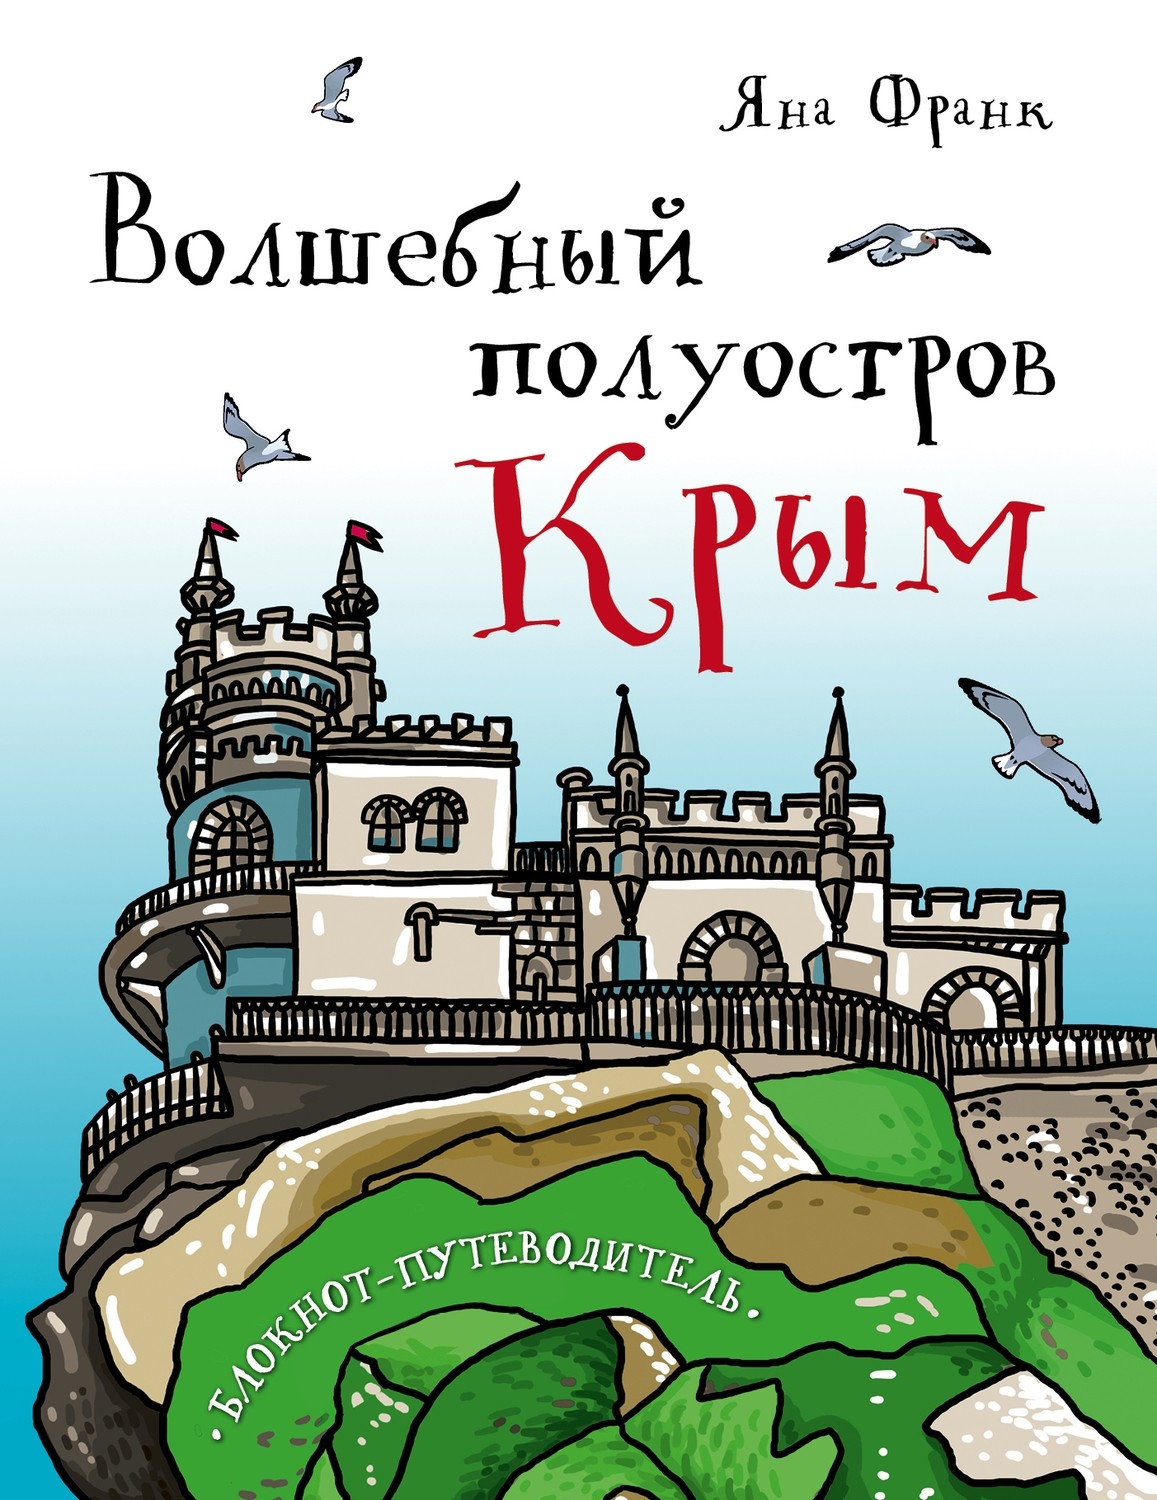 Книга Яны Франк "Волшебный полуостров Крым" с автографом автора